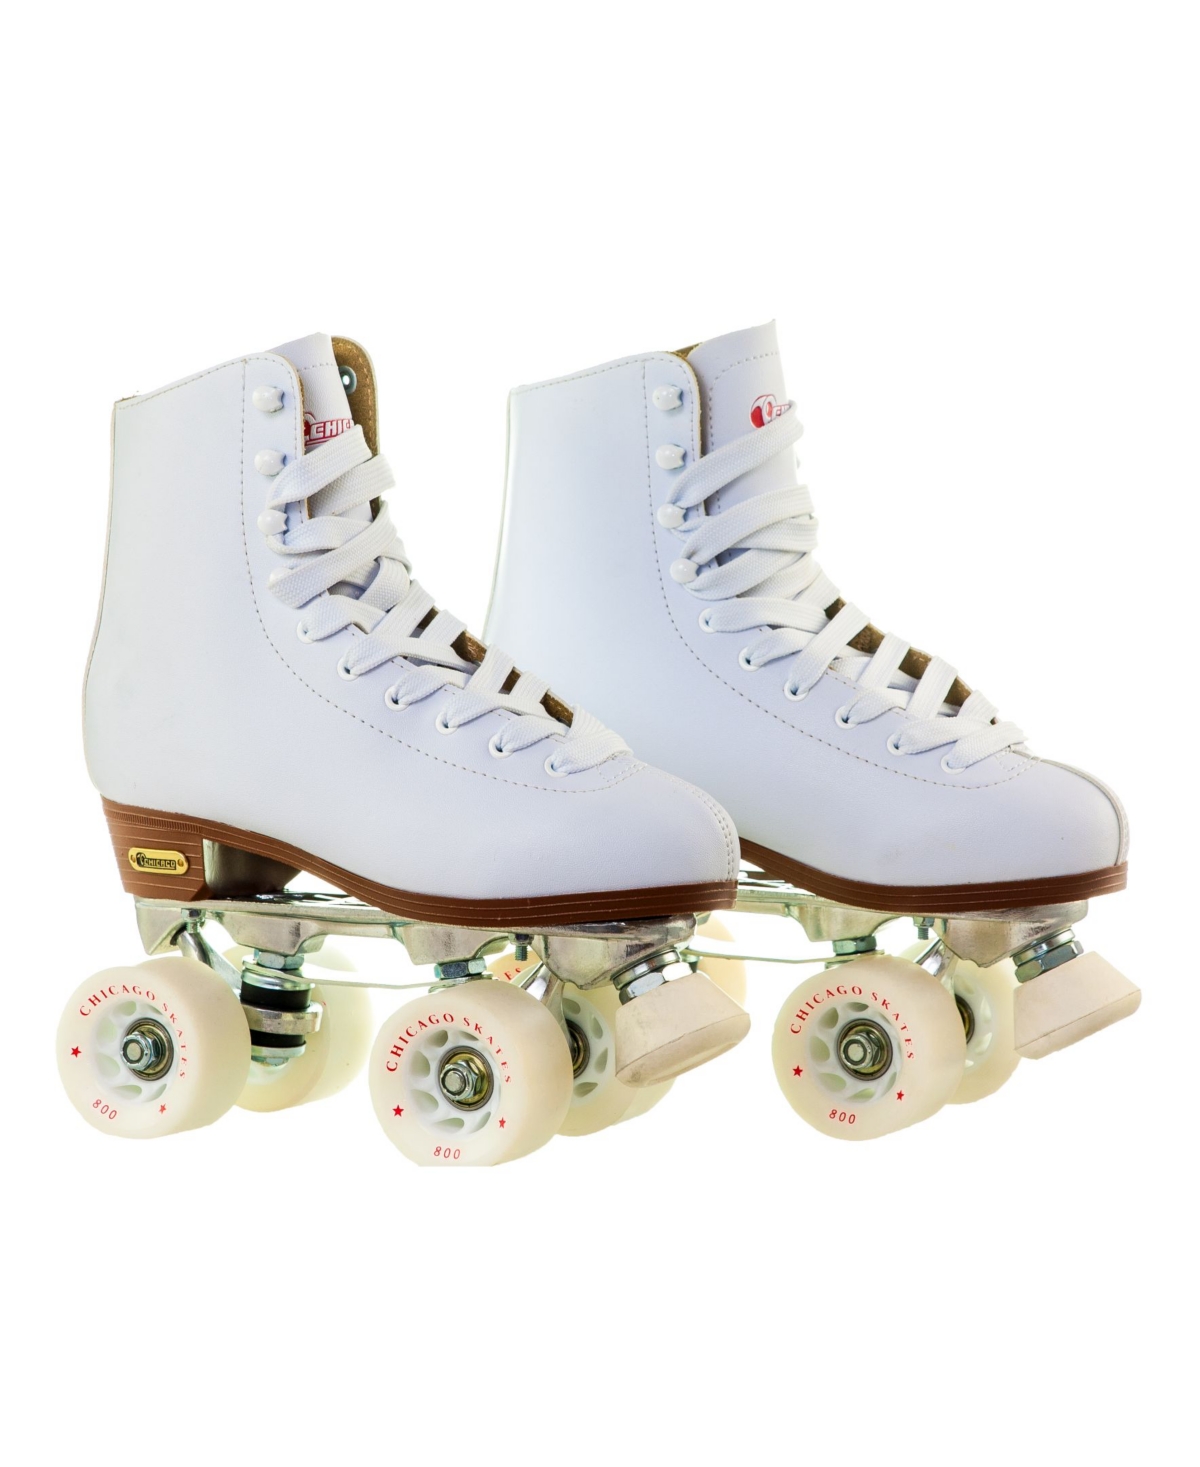 Women's Deluxe Quad Roller Rink Skates - Size 5 - White